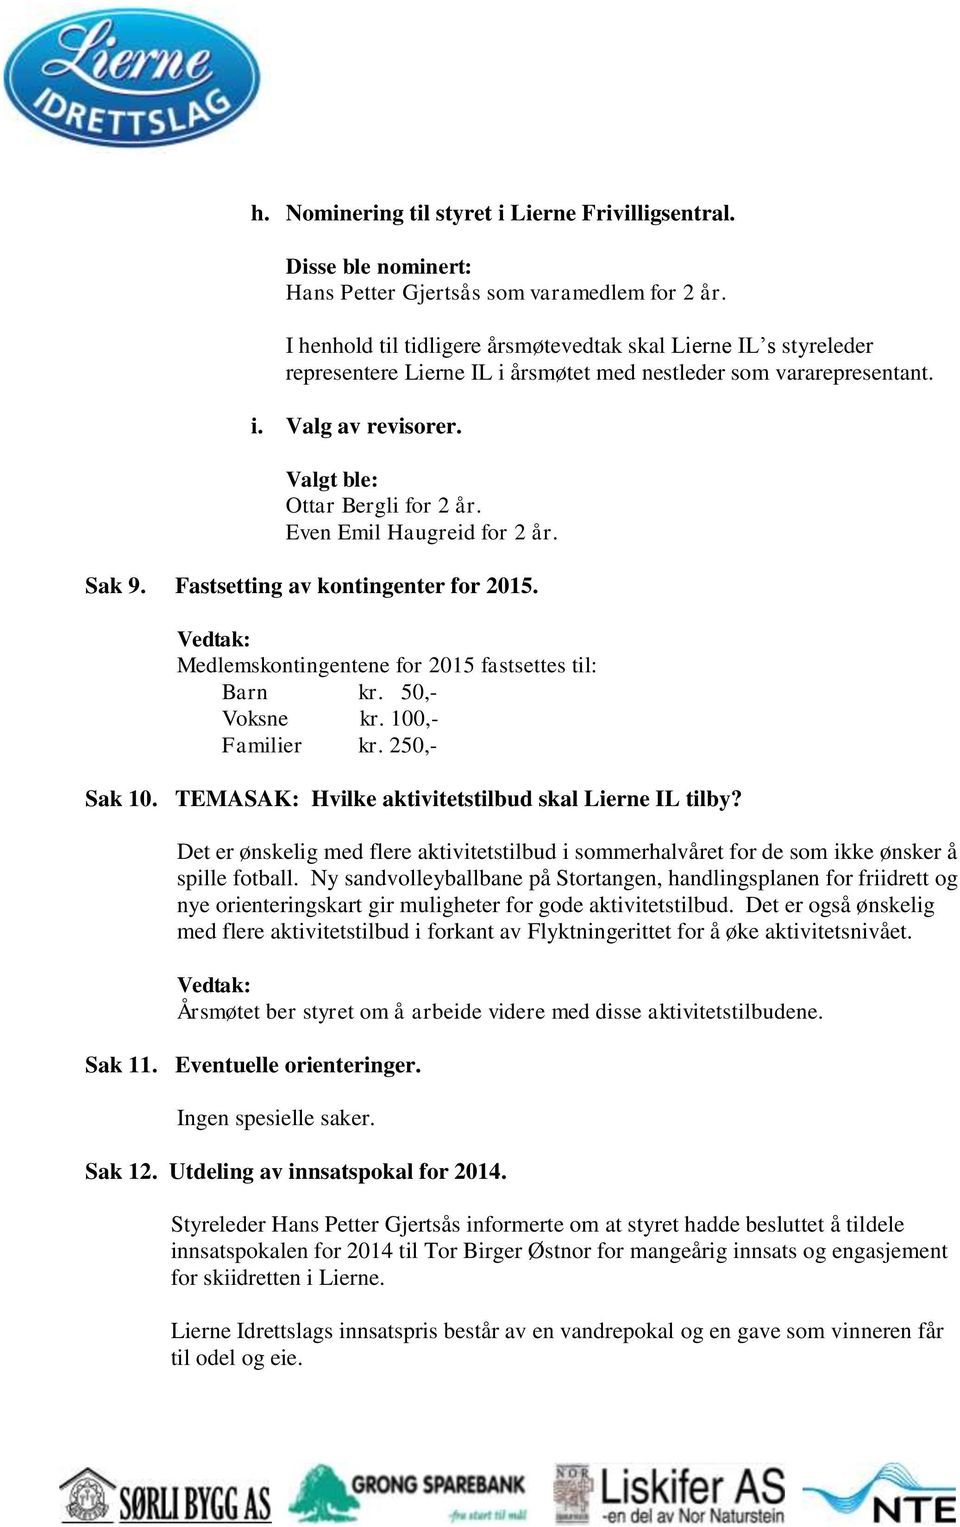 Even Emil Haugreid for 2 år. Sak 9. Fastsetting av kontingenter for 2015. Medlemskontingentene for 2015 fastsettes til: Barn kr. 50,- Voksne kr. 100,- Familier kr. 250,- Sak 10.